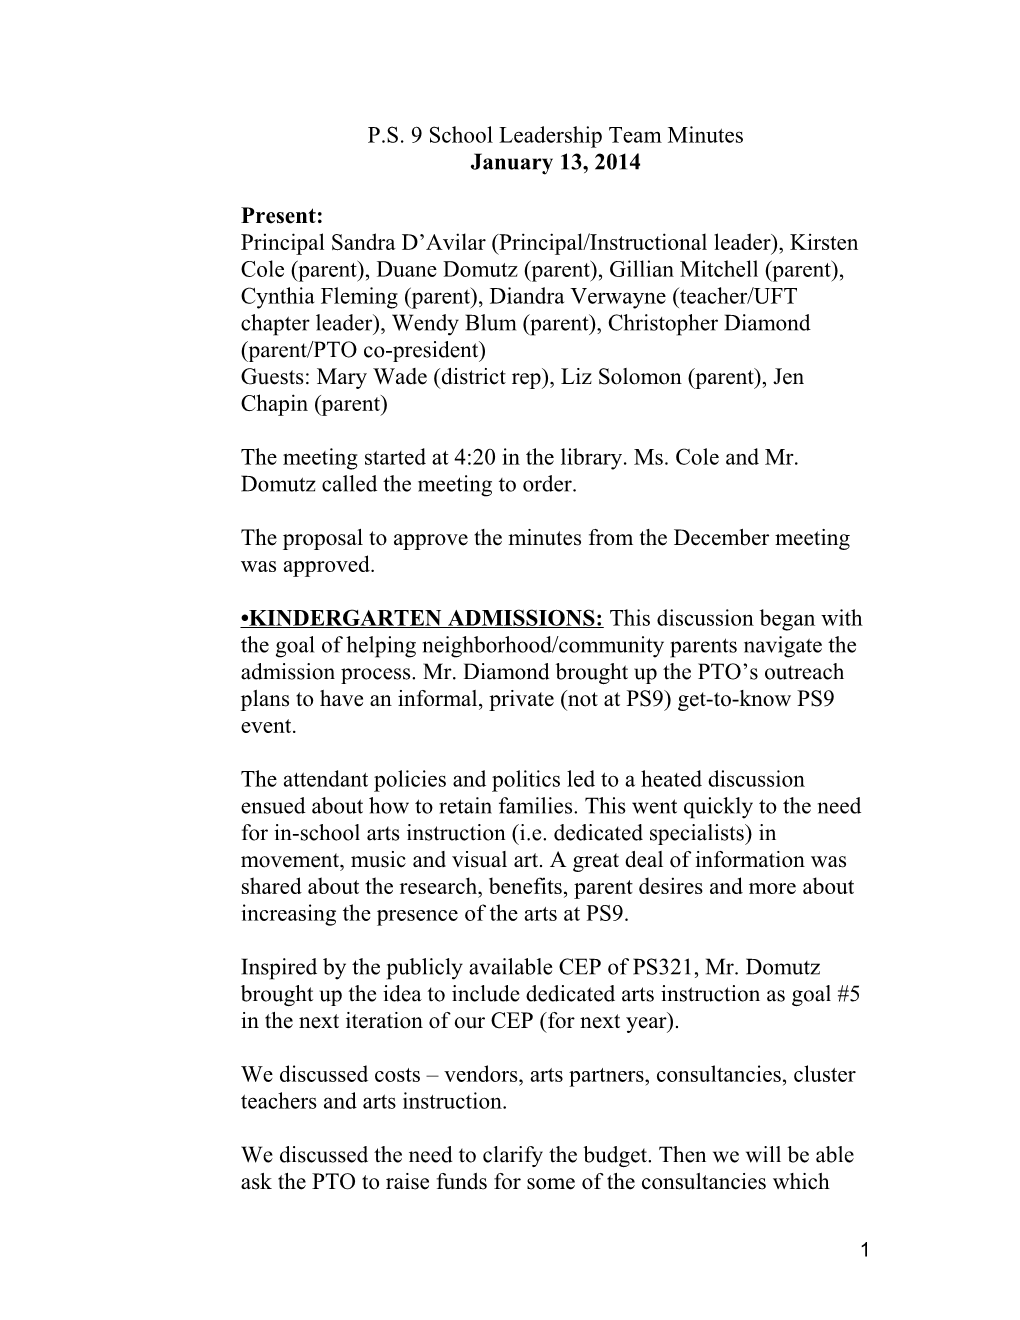 P.S. 9 School Leadership Team Minutes January 13, 2014